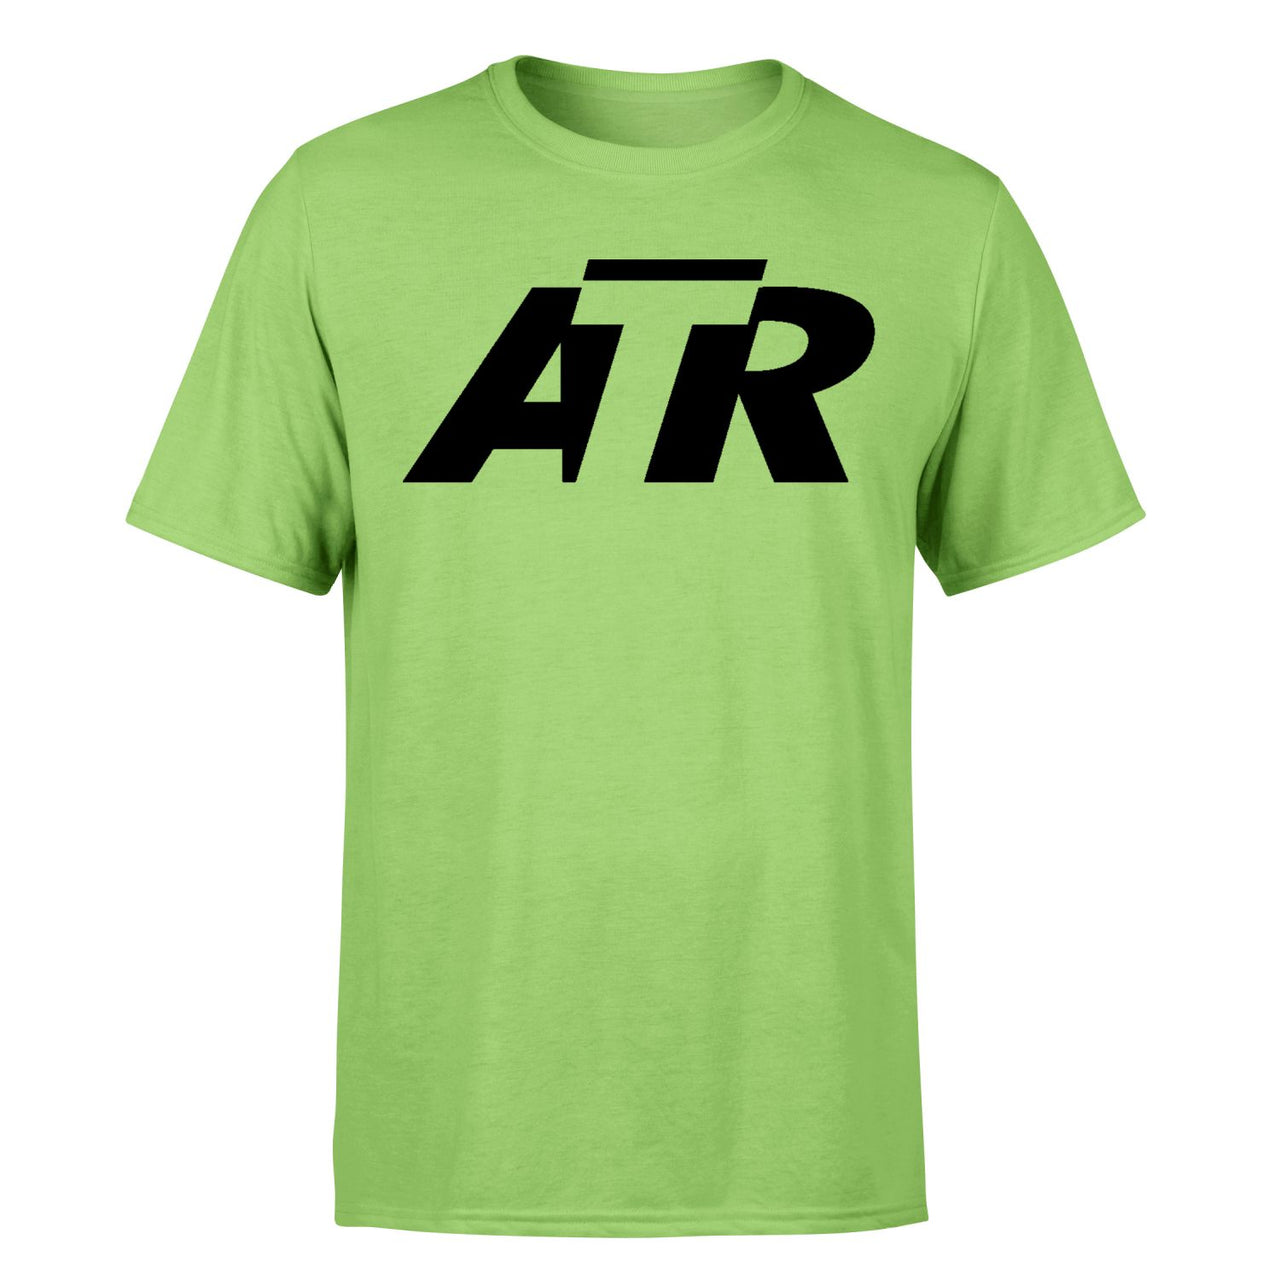 ATR & Text Designed T-Shirts